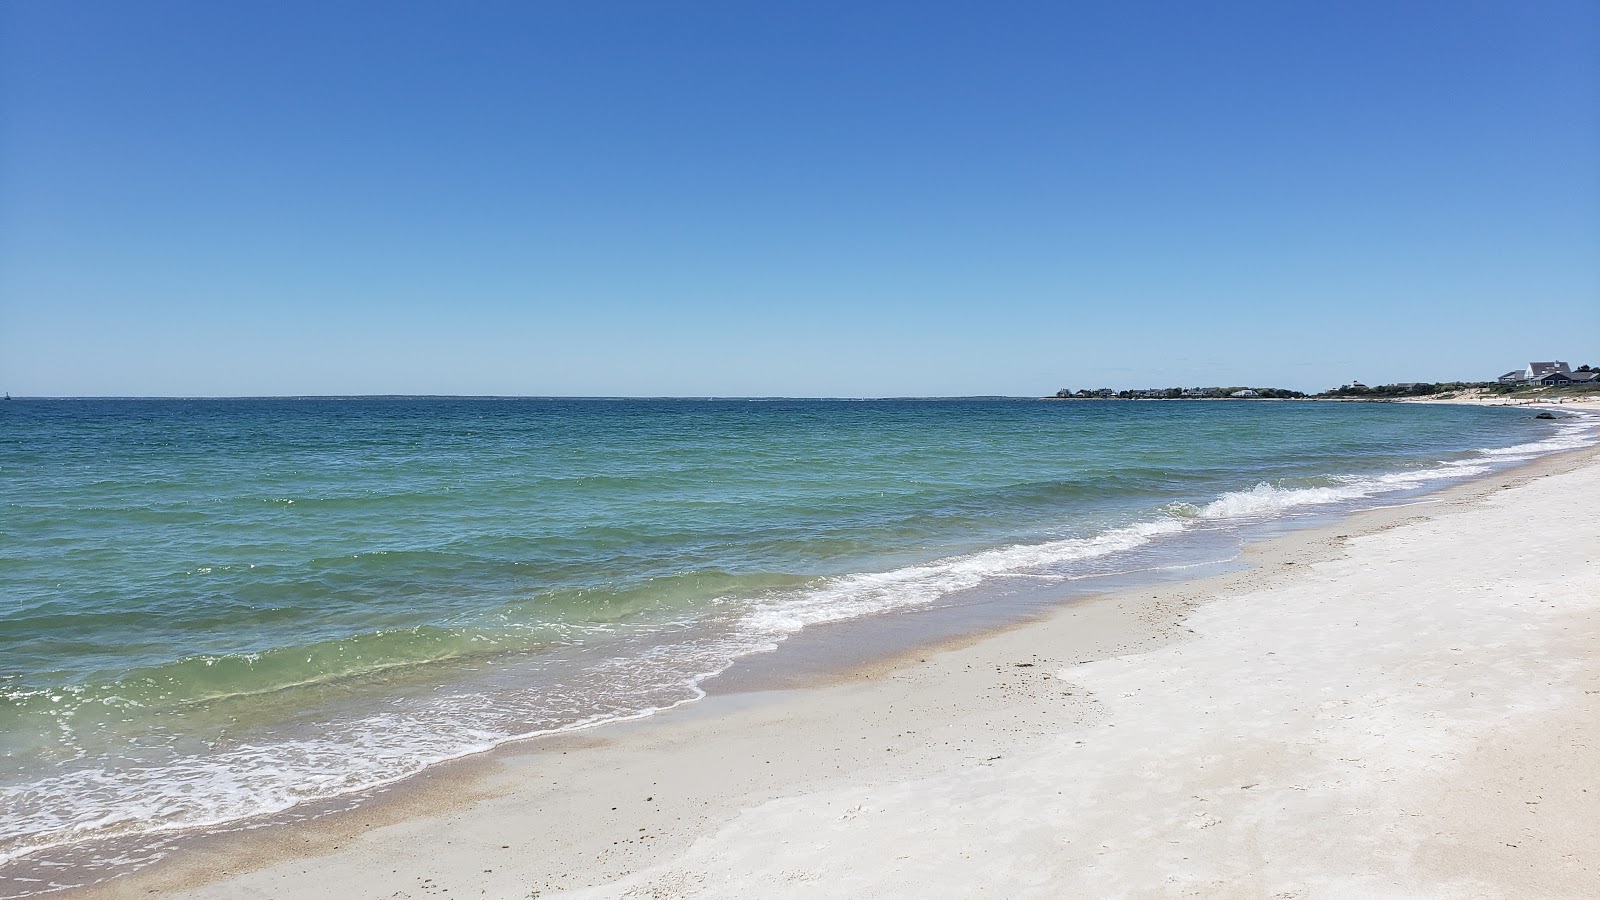 Fotografie cu Old Silver Beach - locul popular printre cunoscătorii de relaxare